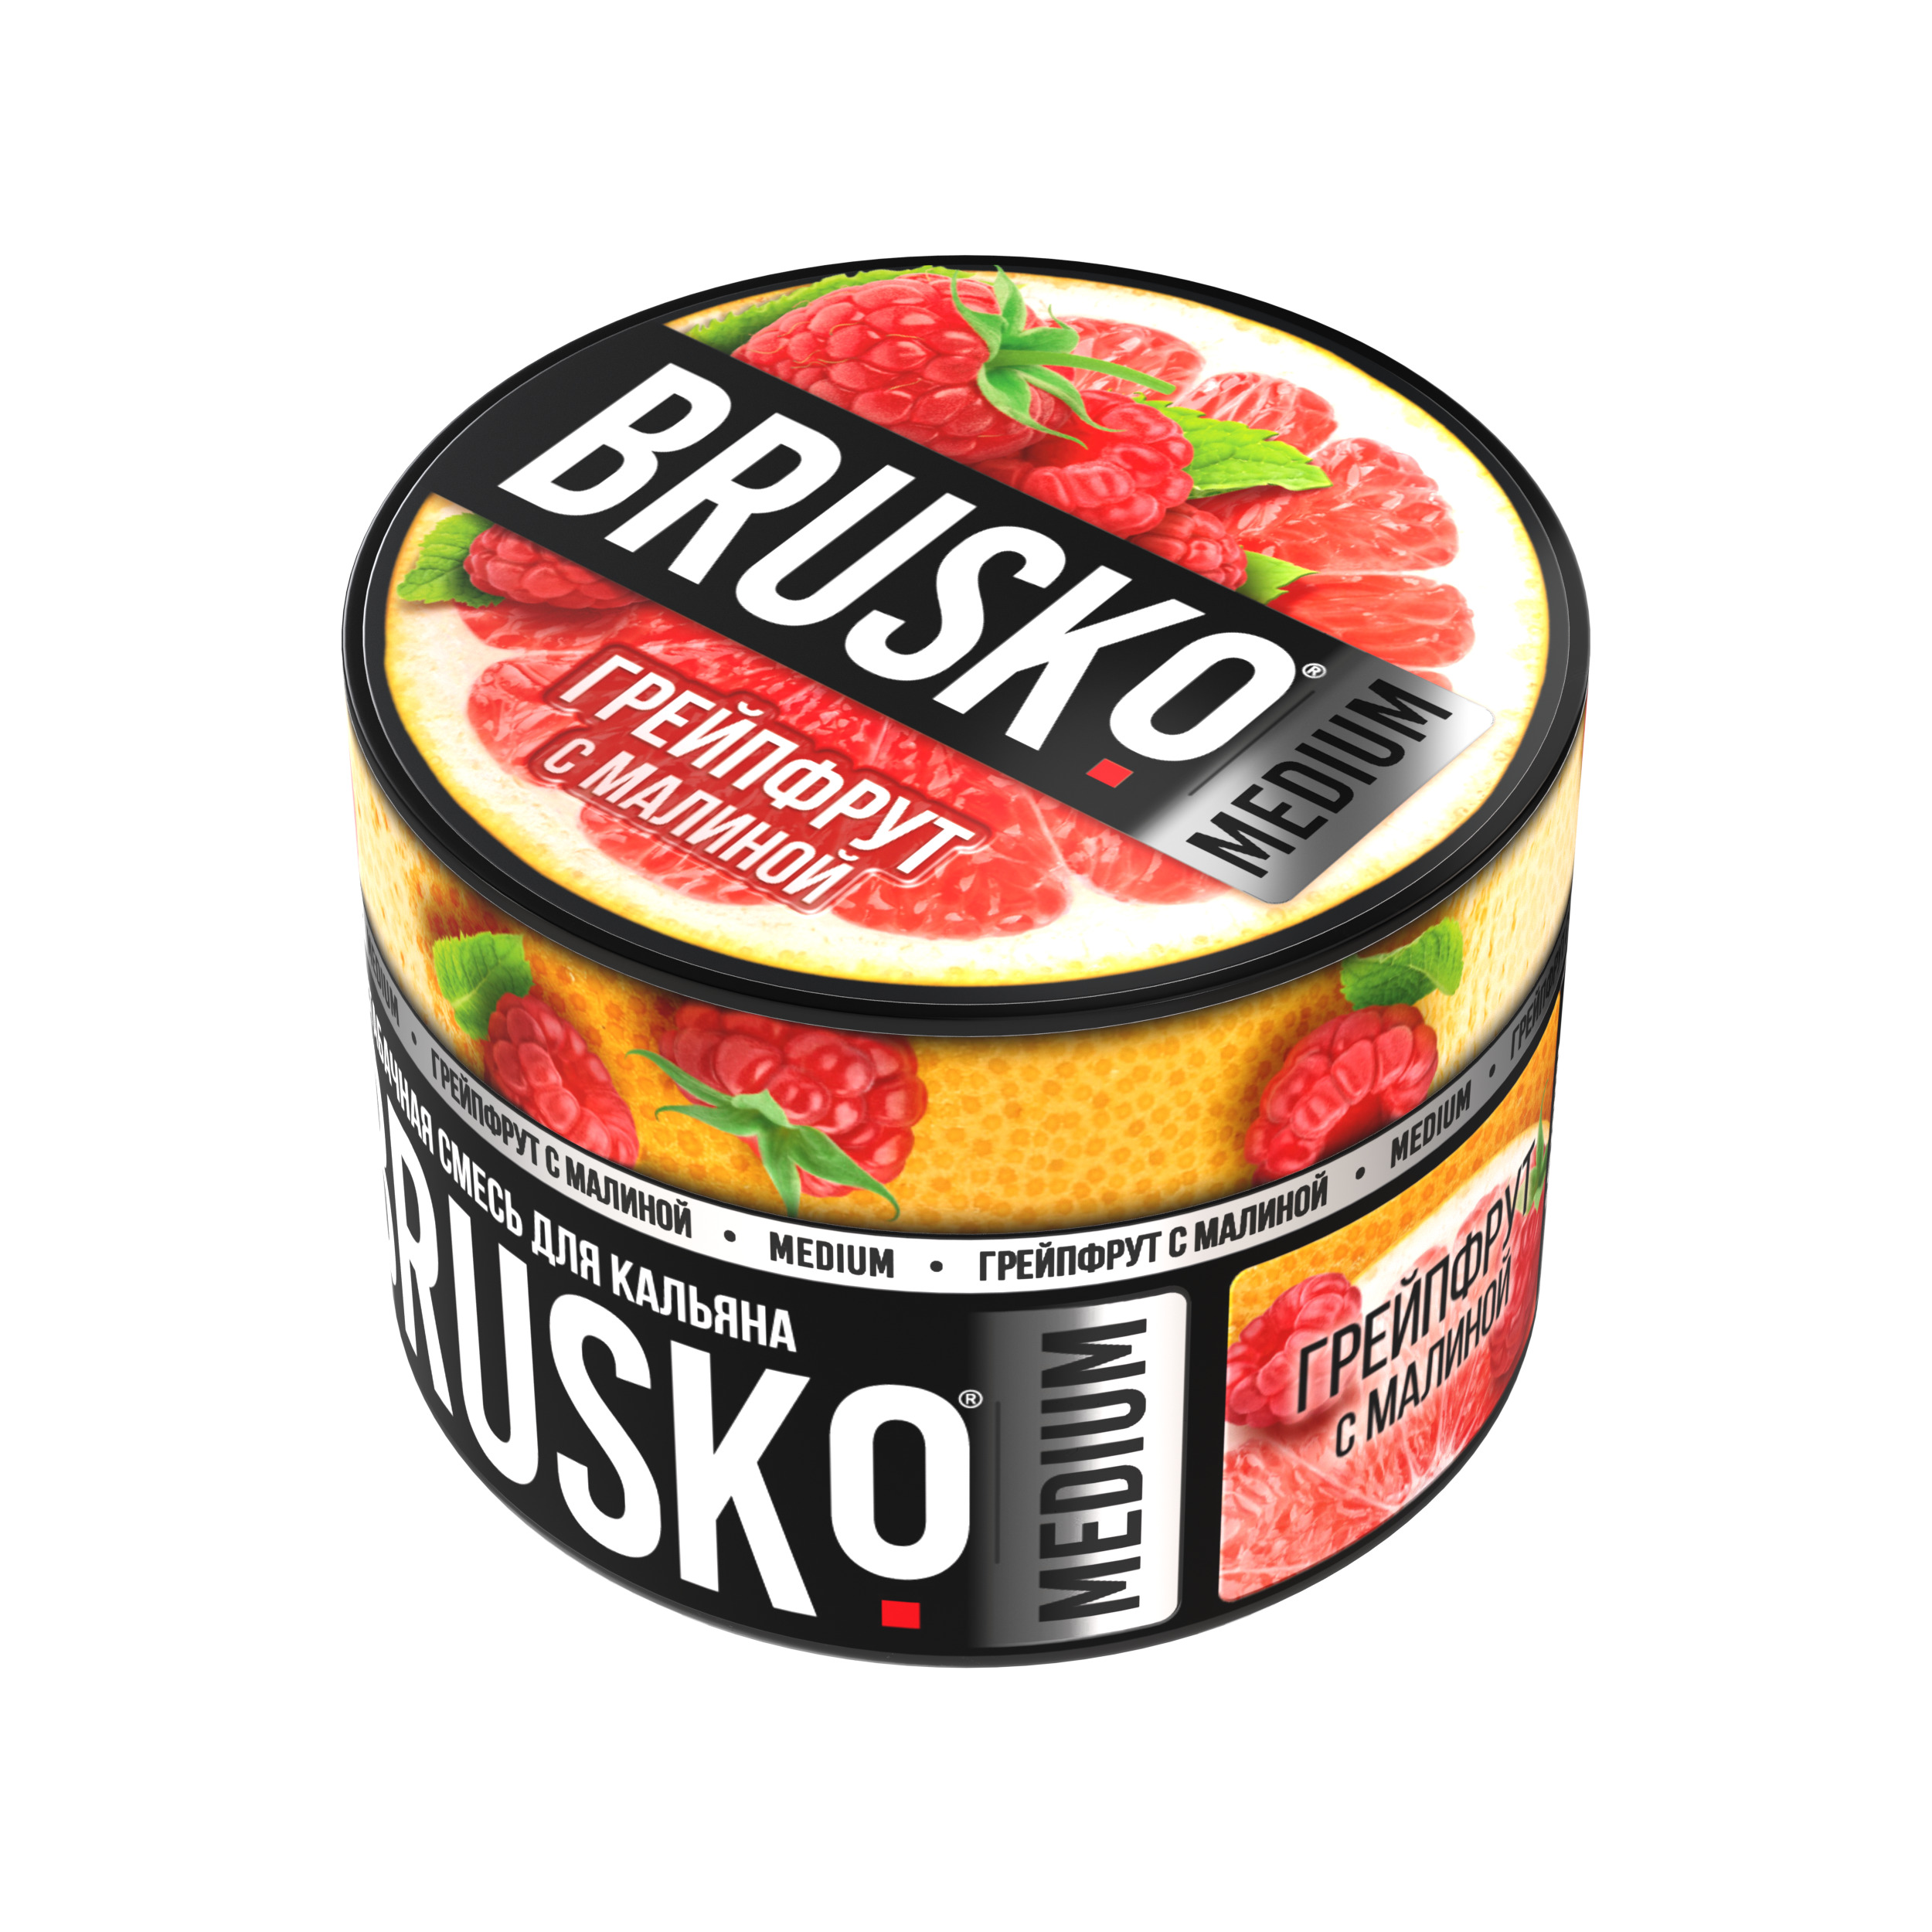 Бестабачная смесь для кальяна BRUSKO, 50 г, Грейпфрут с малиной, Medium